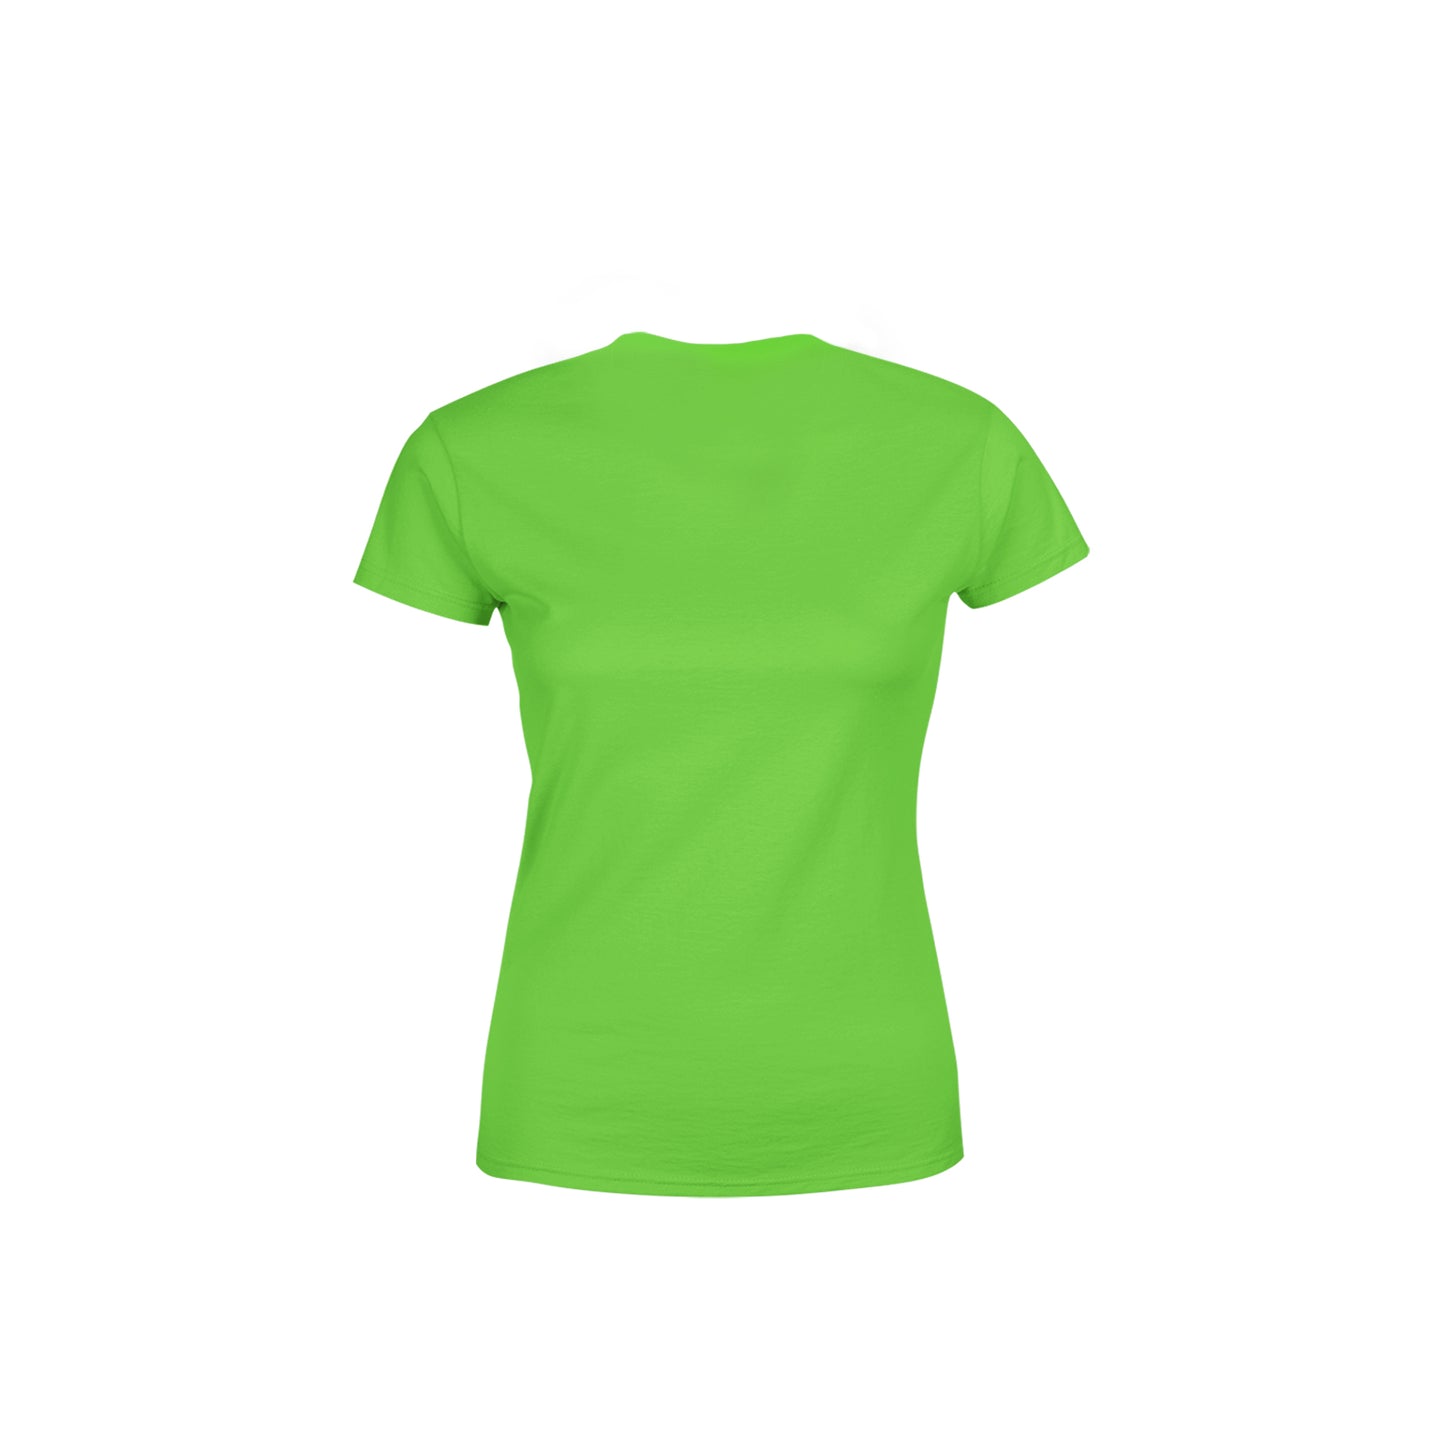 05 Number Women's T-Shirt (Liril Green)